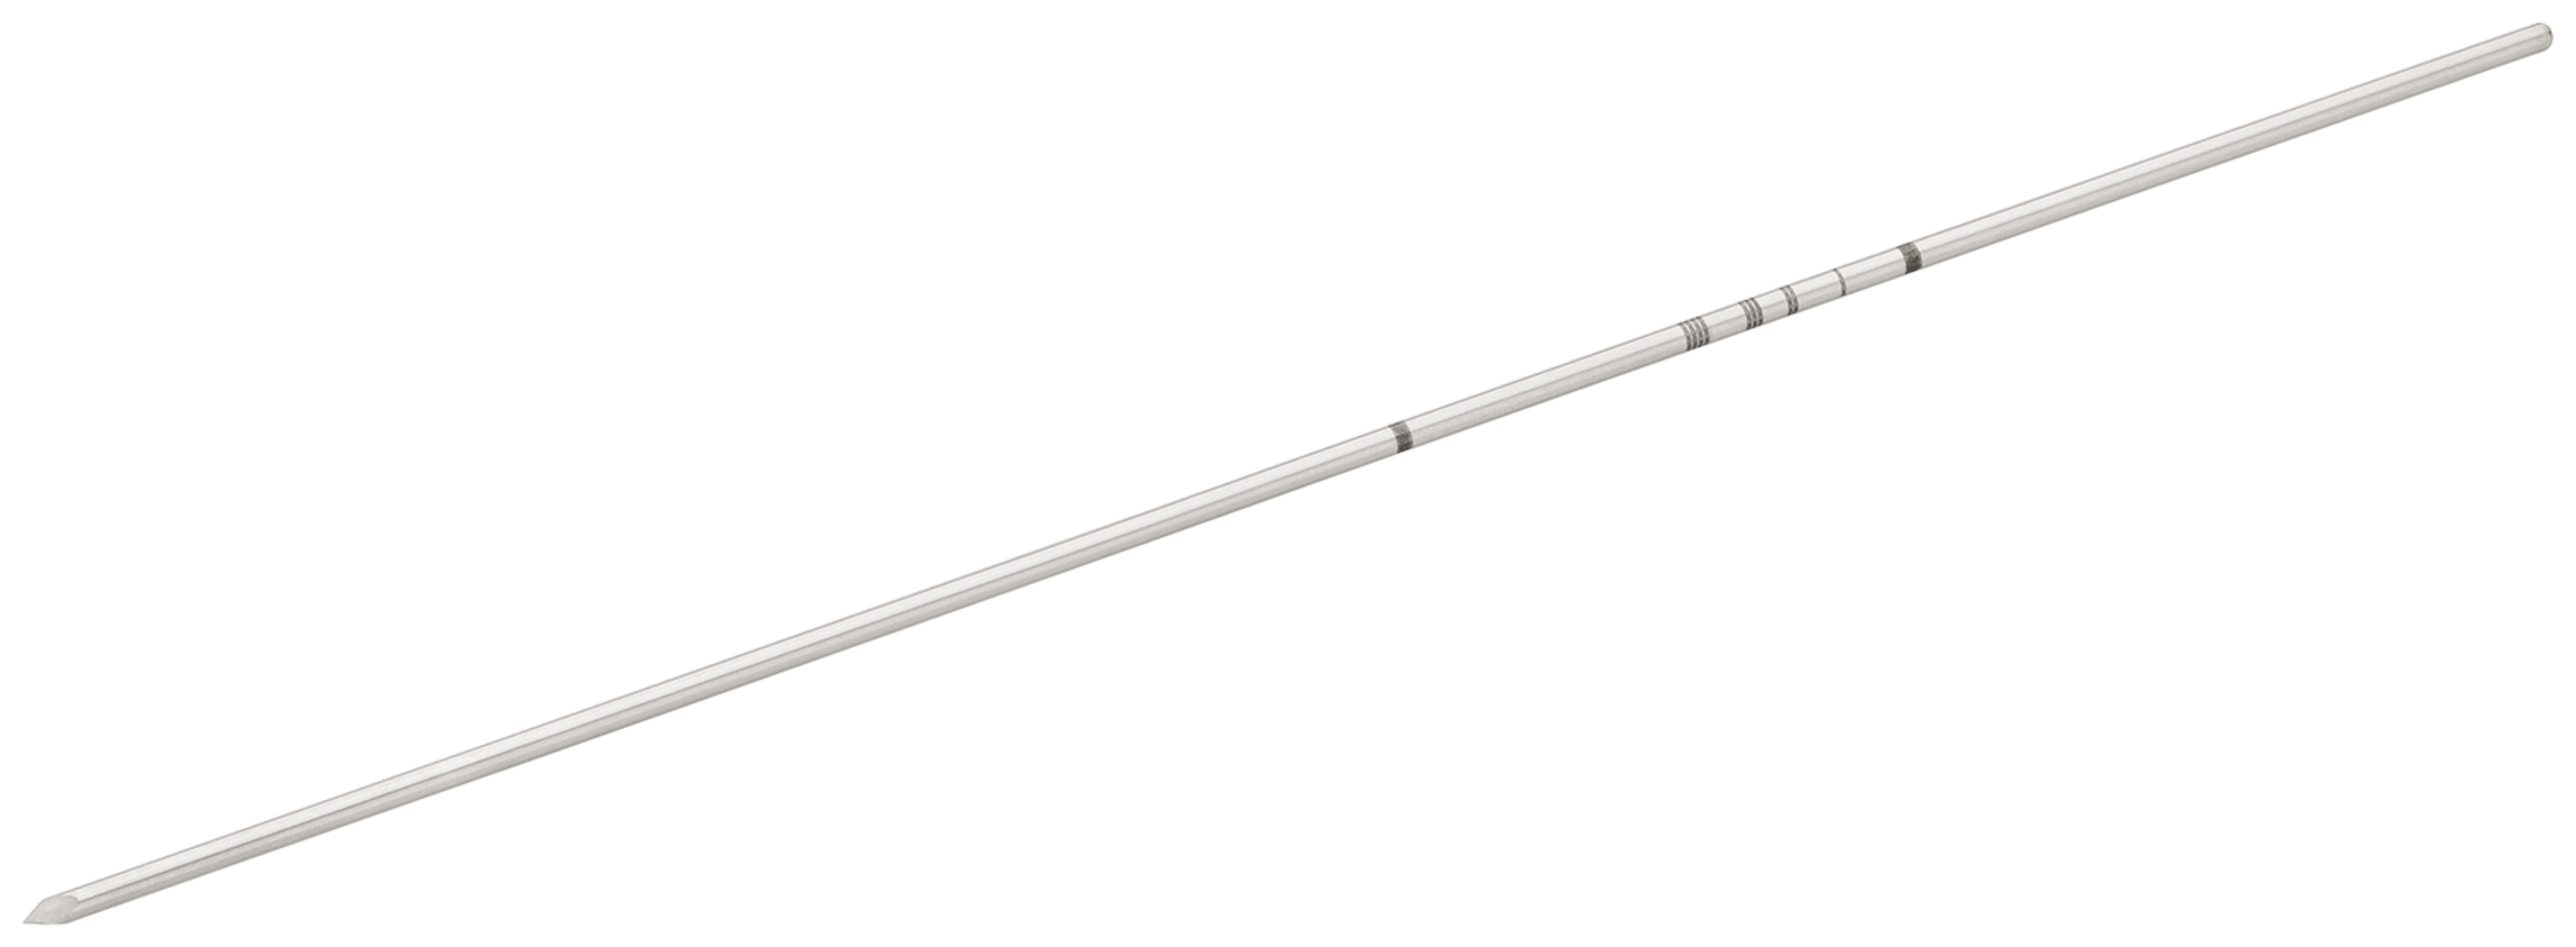 Führungsdraht, für Metatarsalkopf, minimal-invasives Hallux valgus-Zielgerät, 1.6 mm